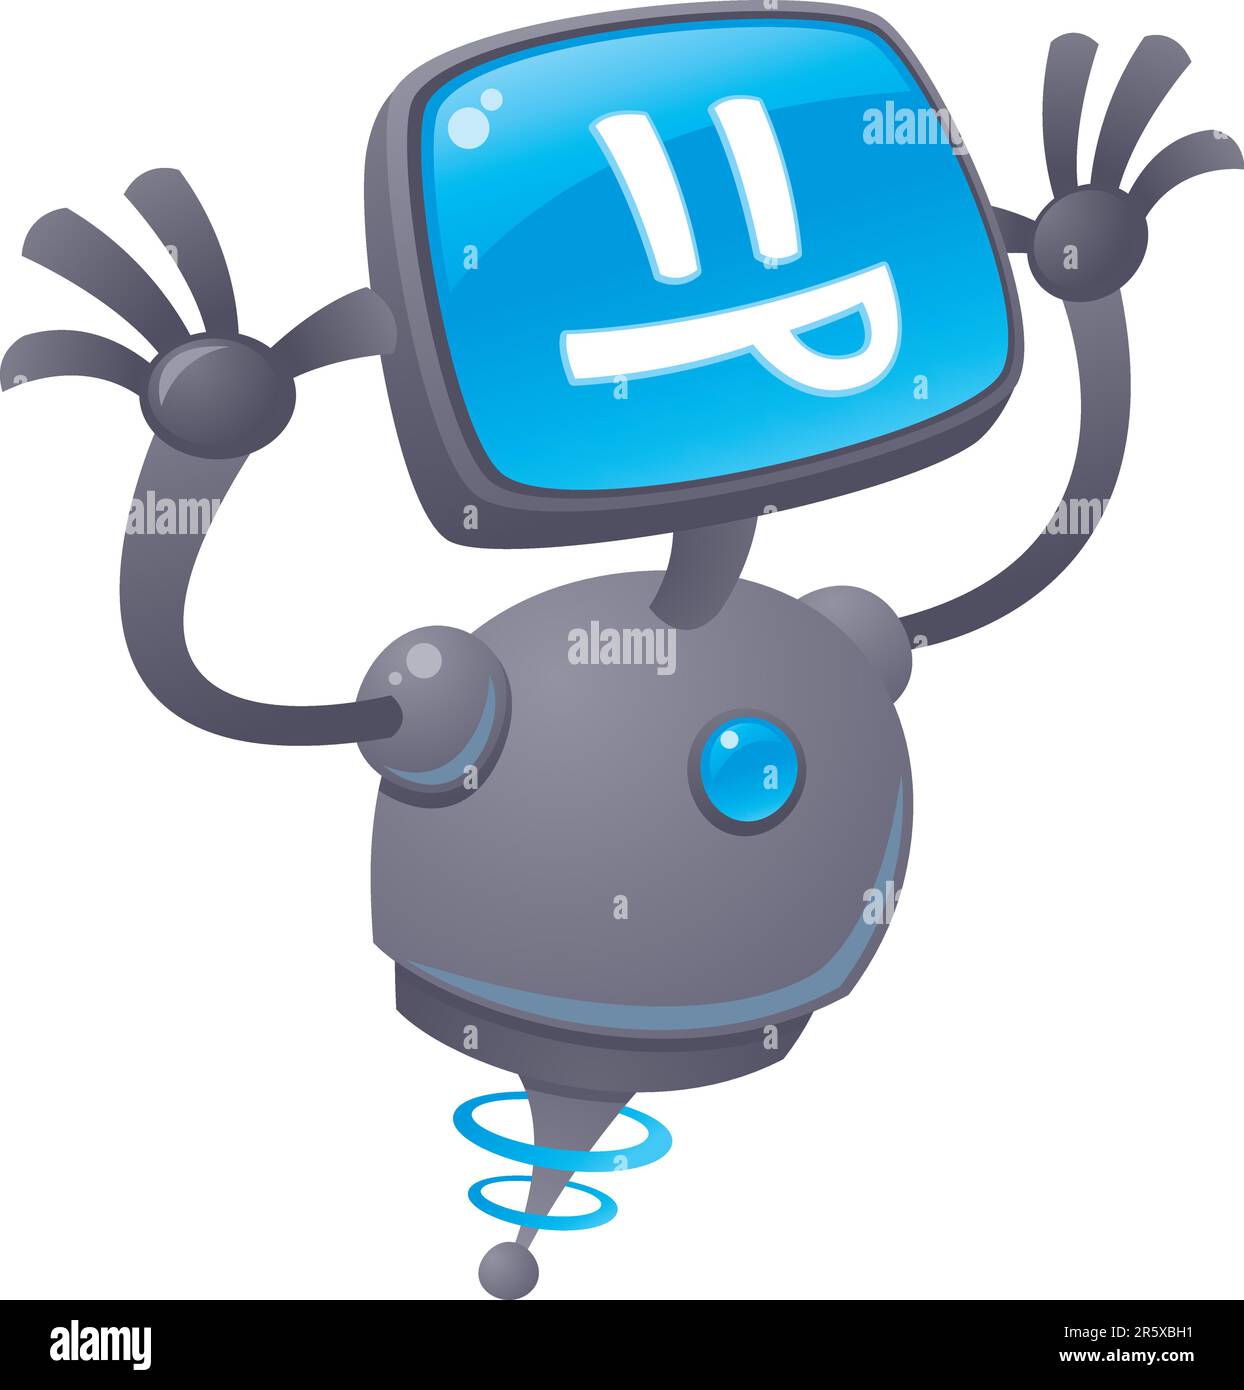 Vektor-Cartoon-Illustration eines dummen Roboter mit einem Computer-Bildschirm Gesicht seine Zunge mit einer Himbeere. Stock Vektor